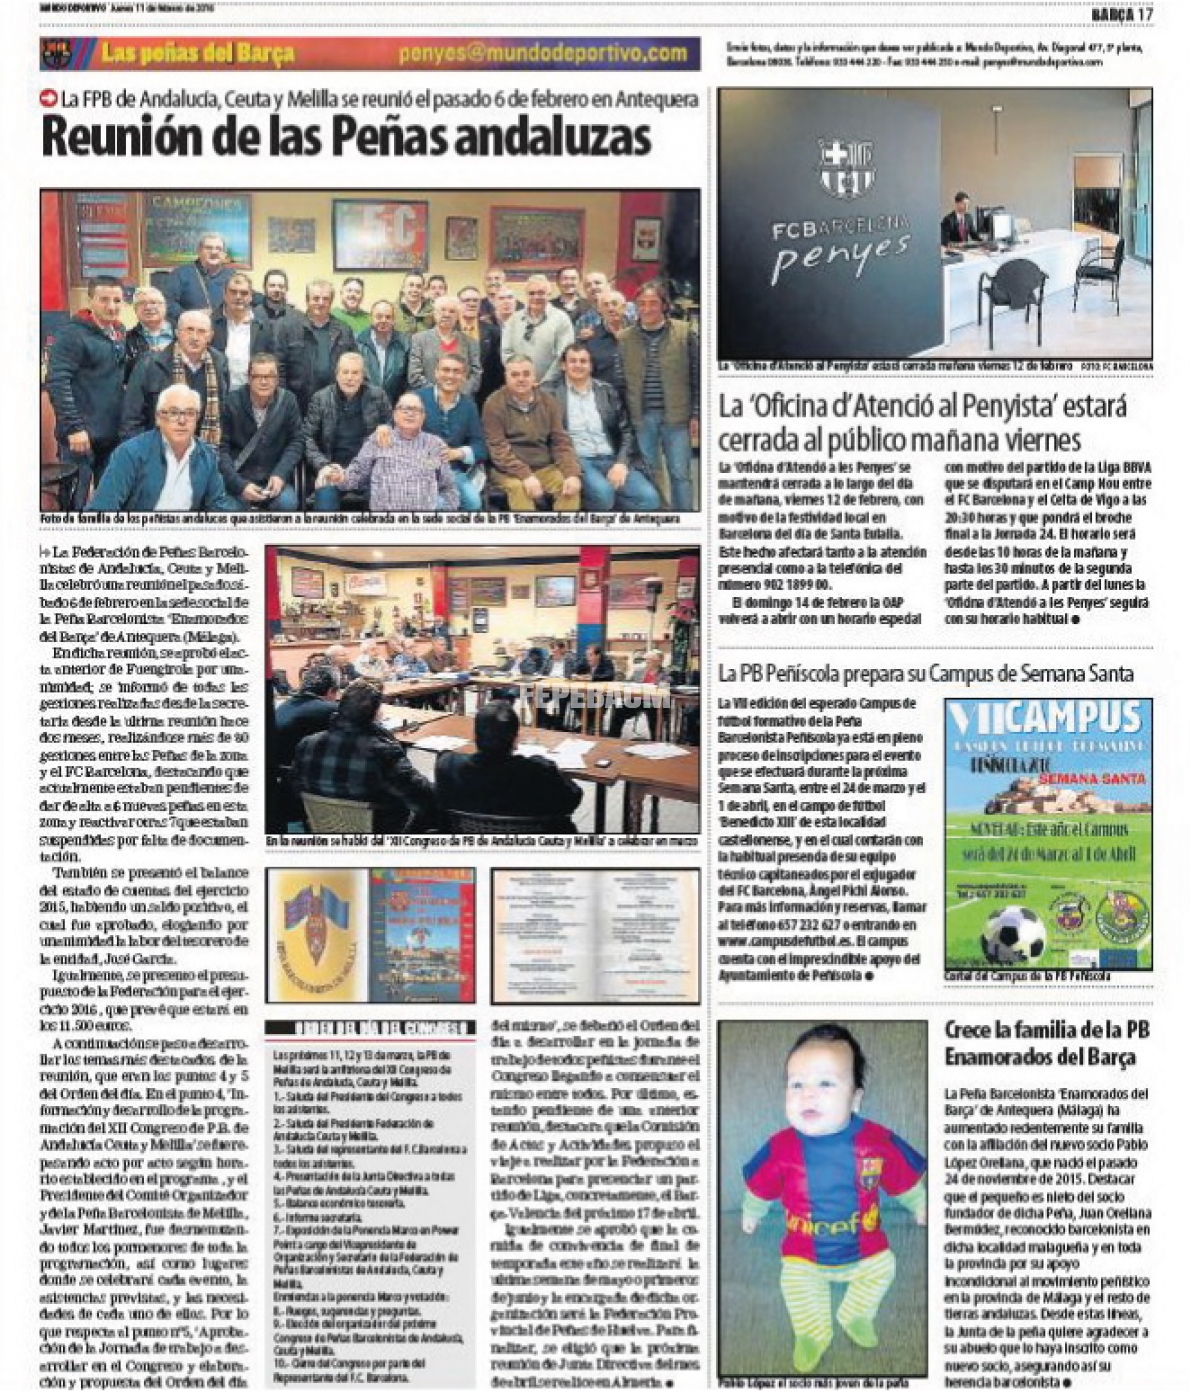 Mundo Deportivo | 11-02-2016 | Reunión de las Peñas andaluzas en Antequera